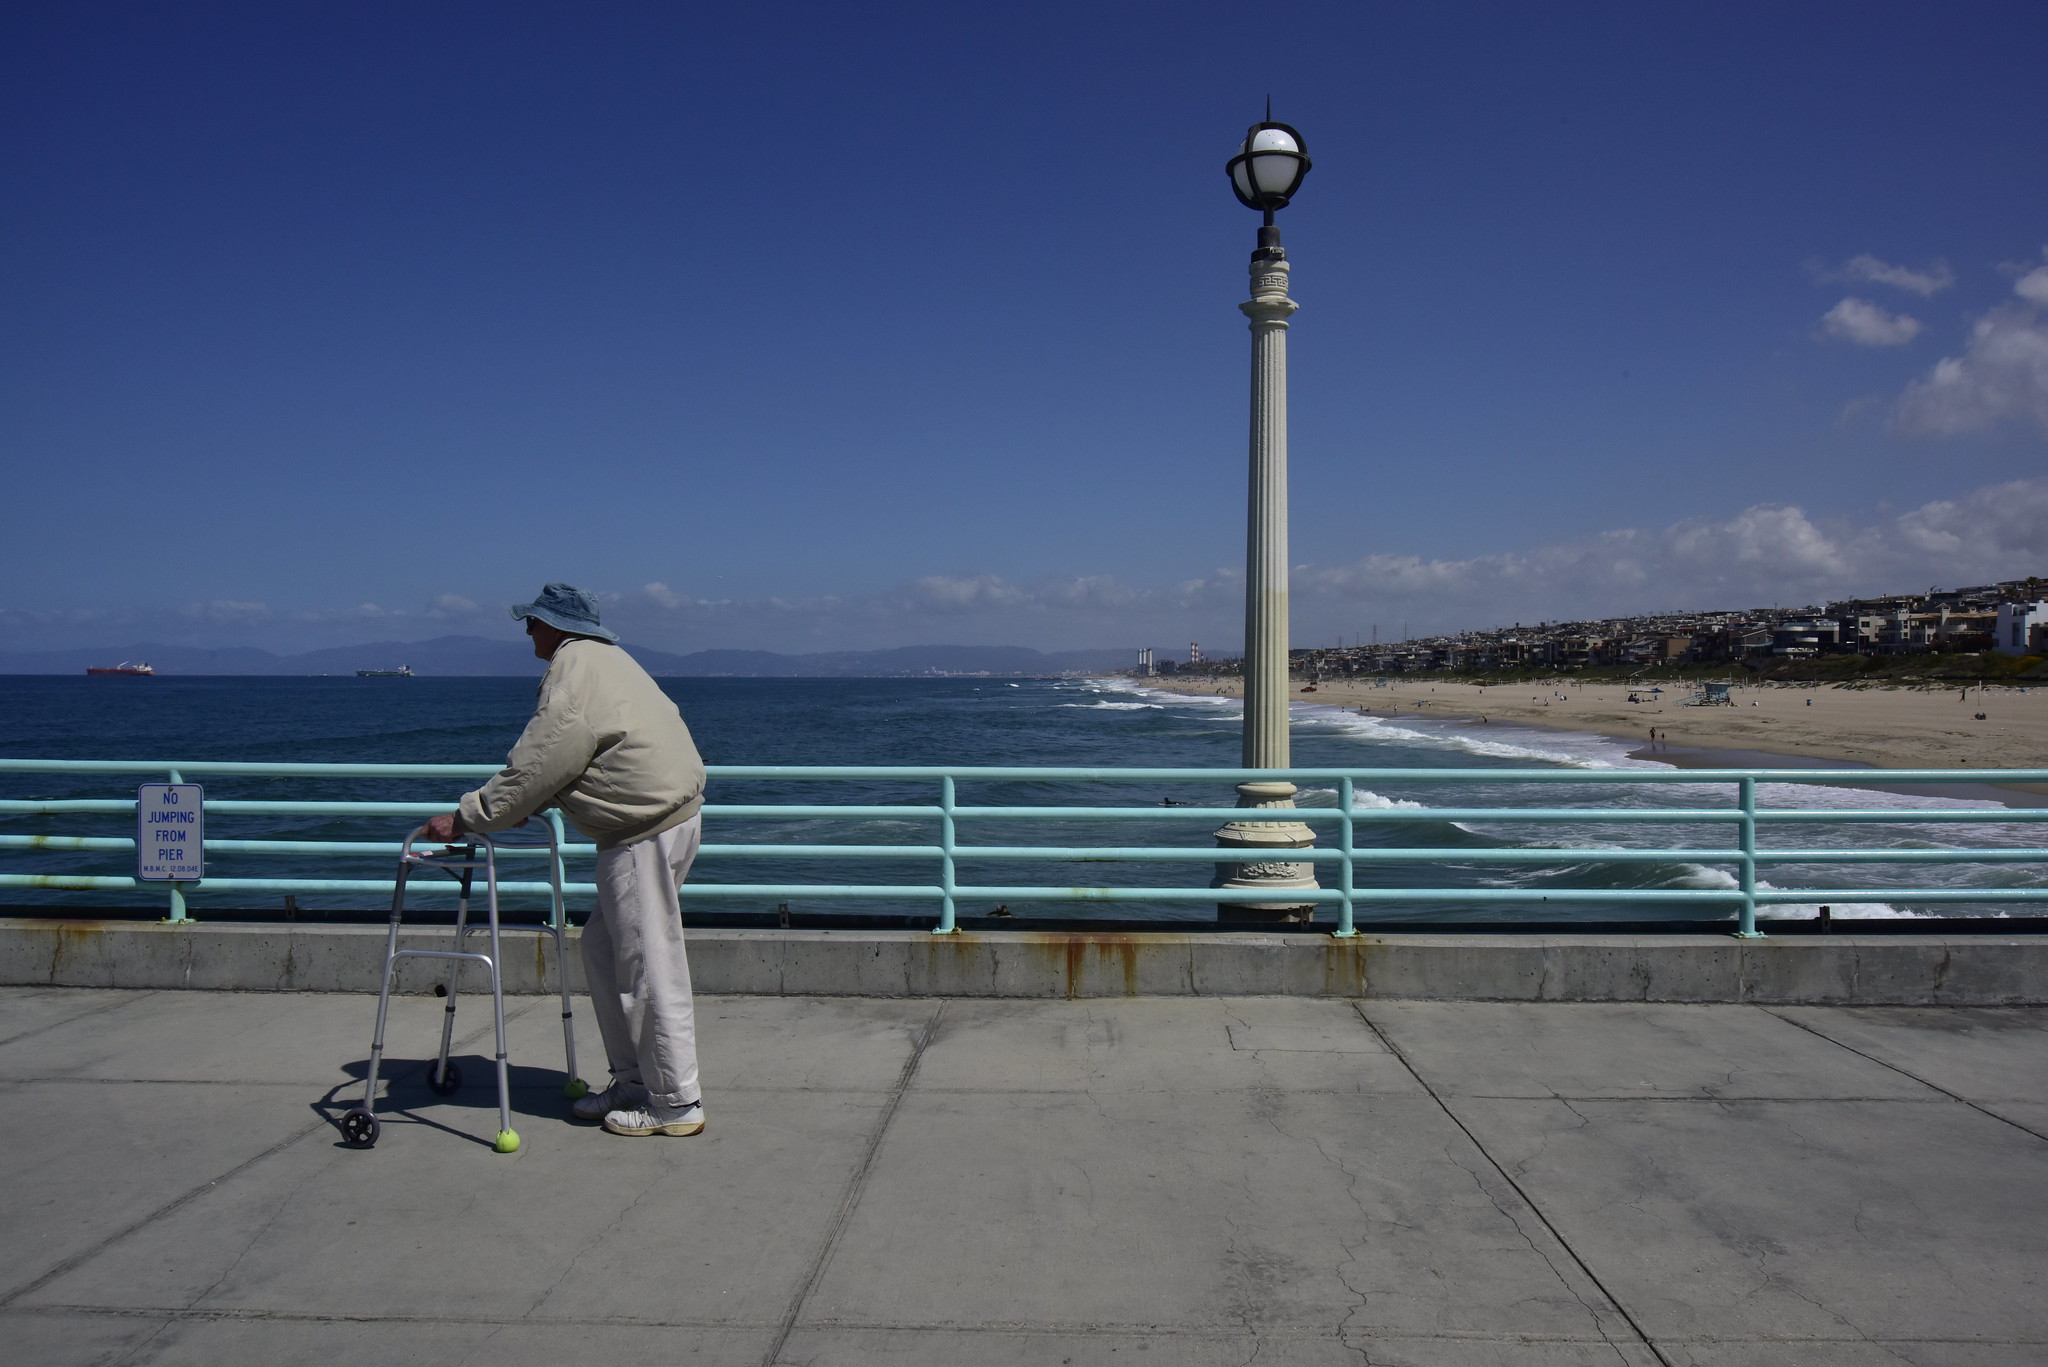 An elderly man walks on a pier